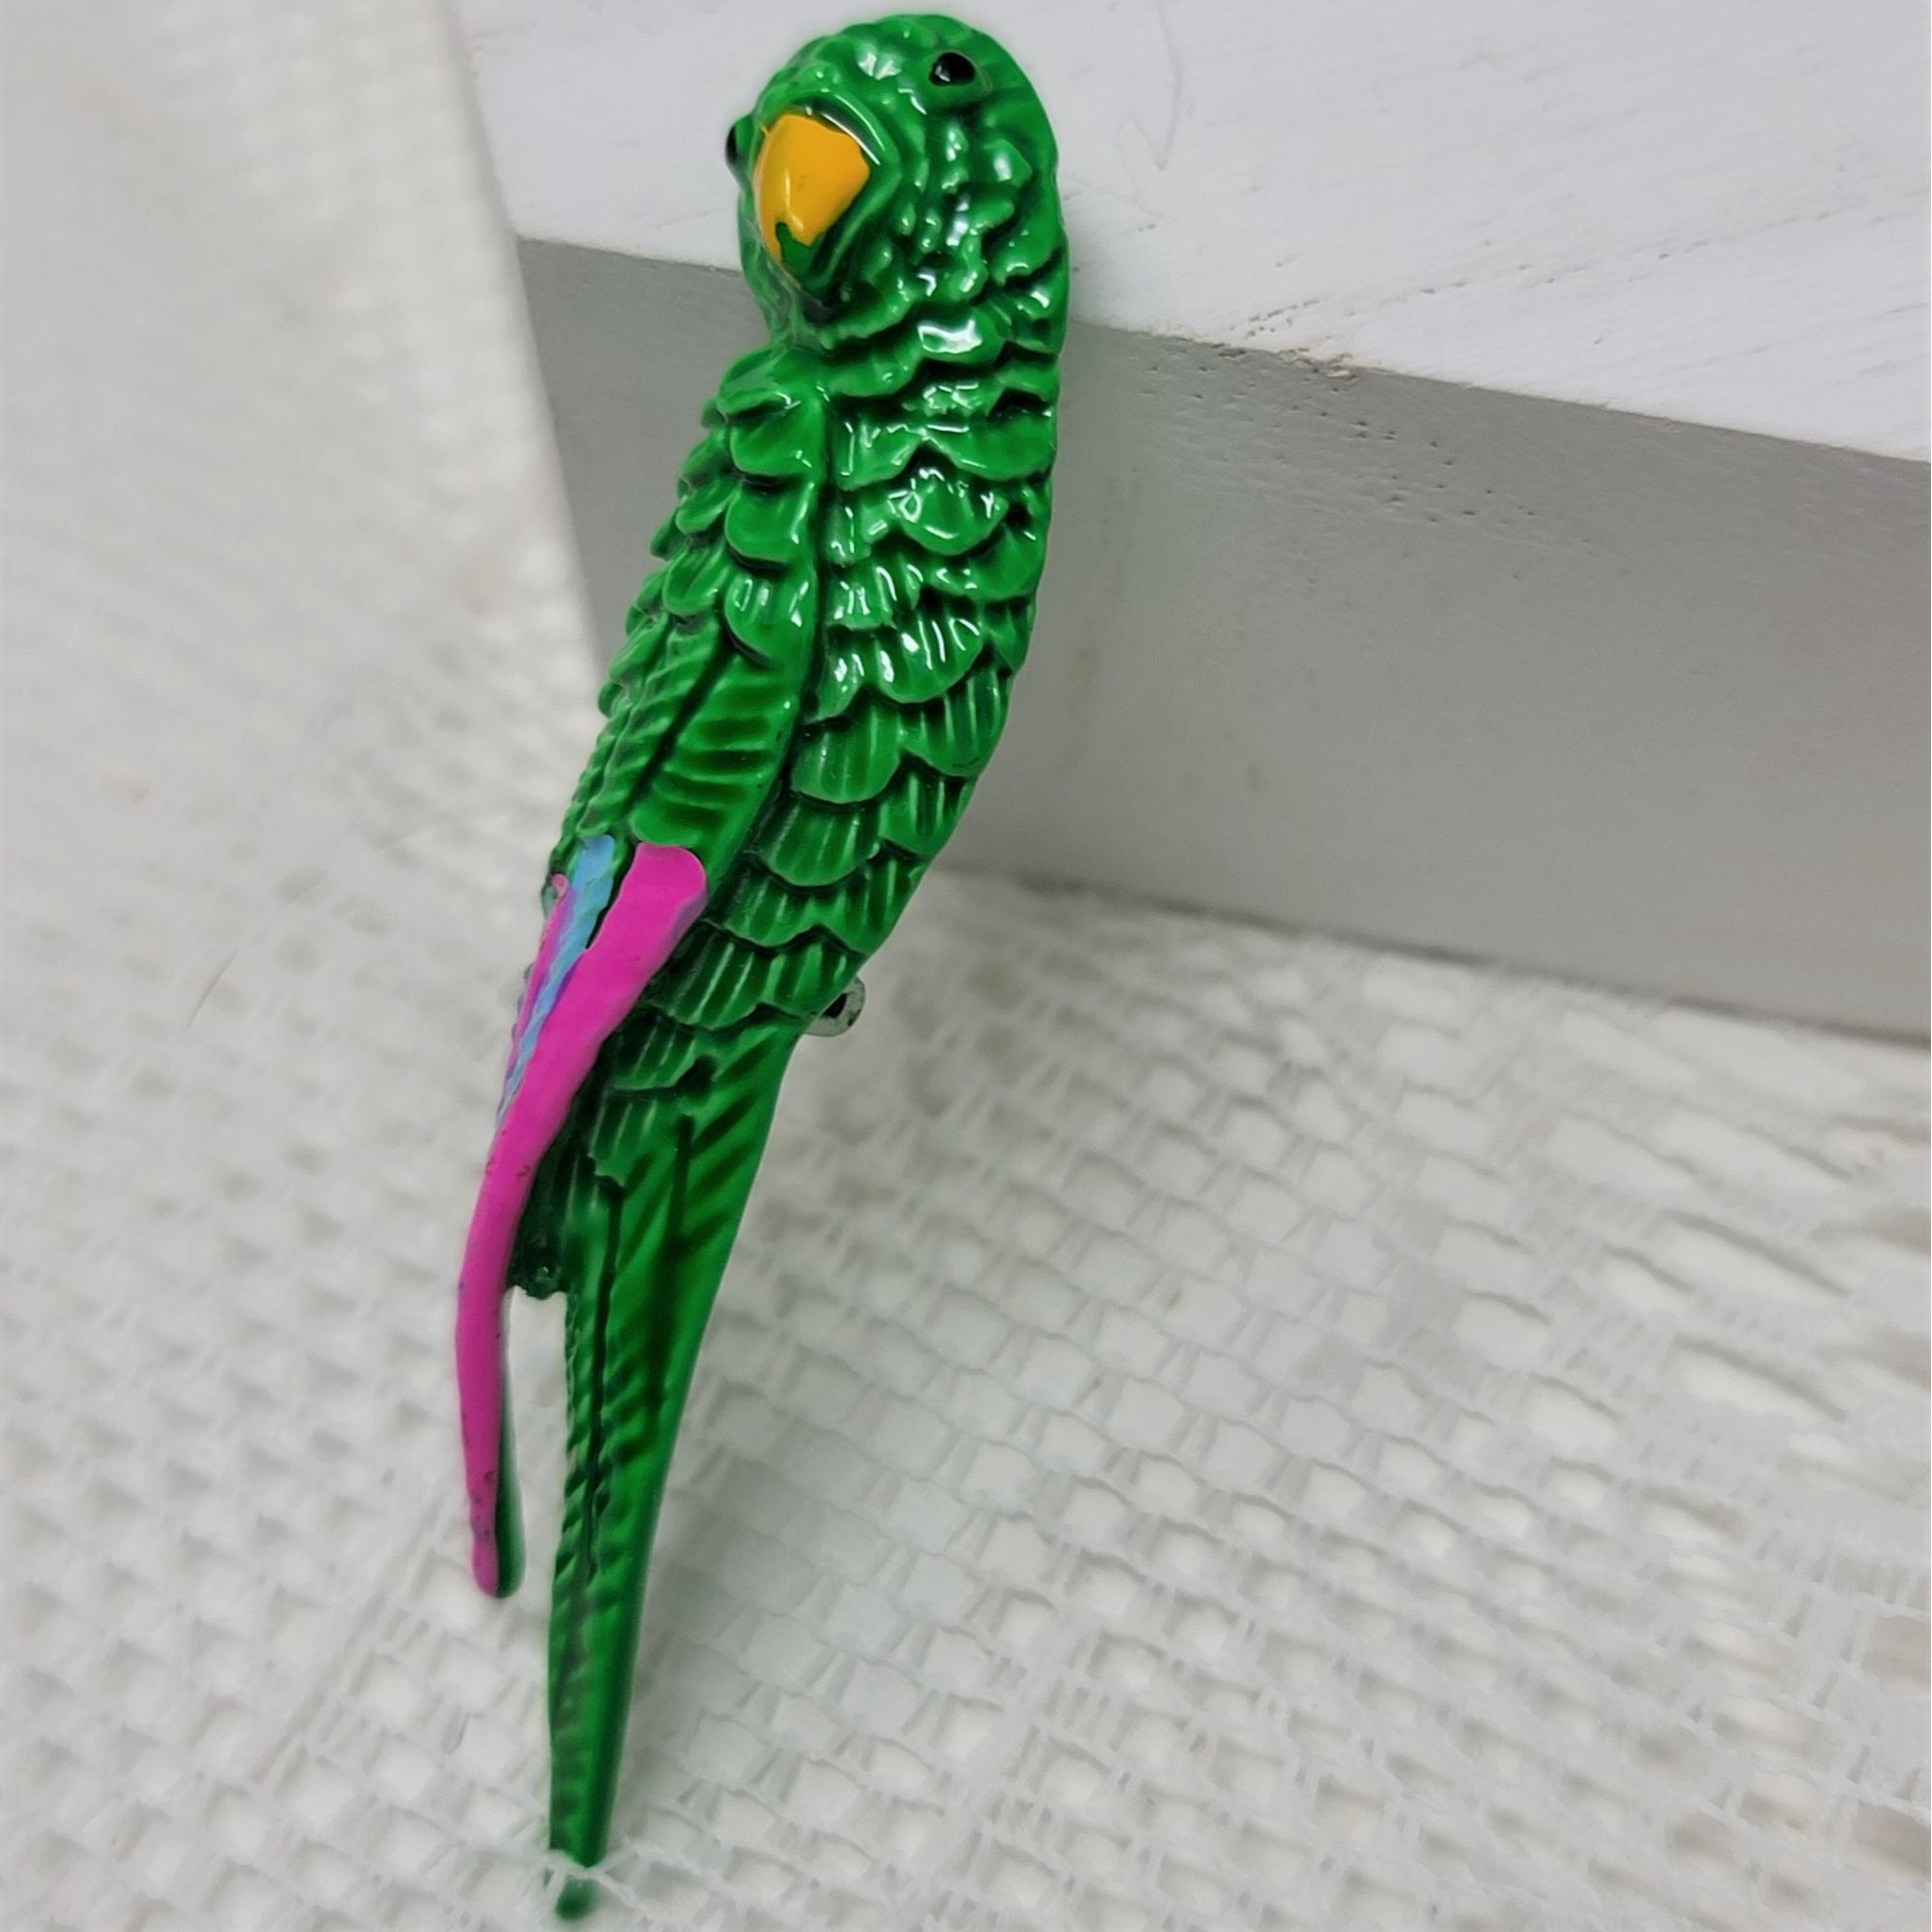 Vintage Green Parrot Metal Brooch Pin Bird